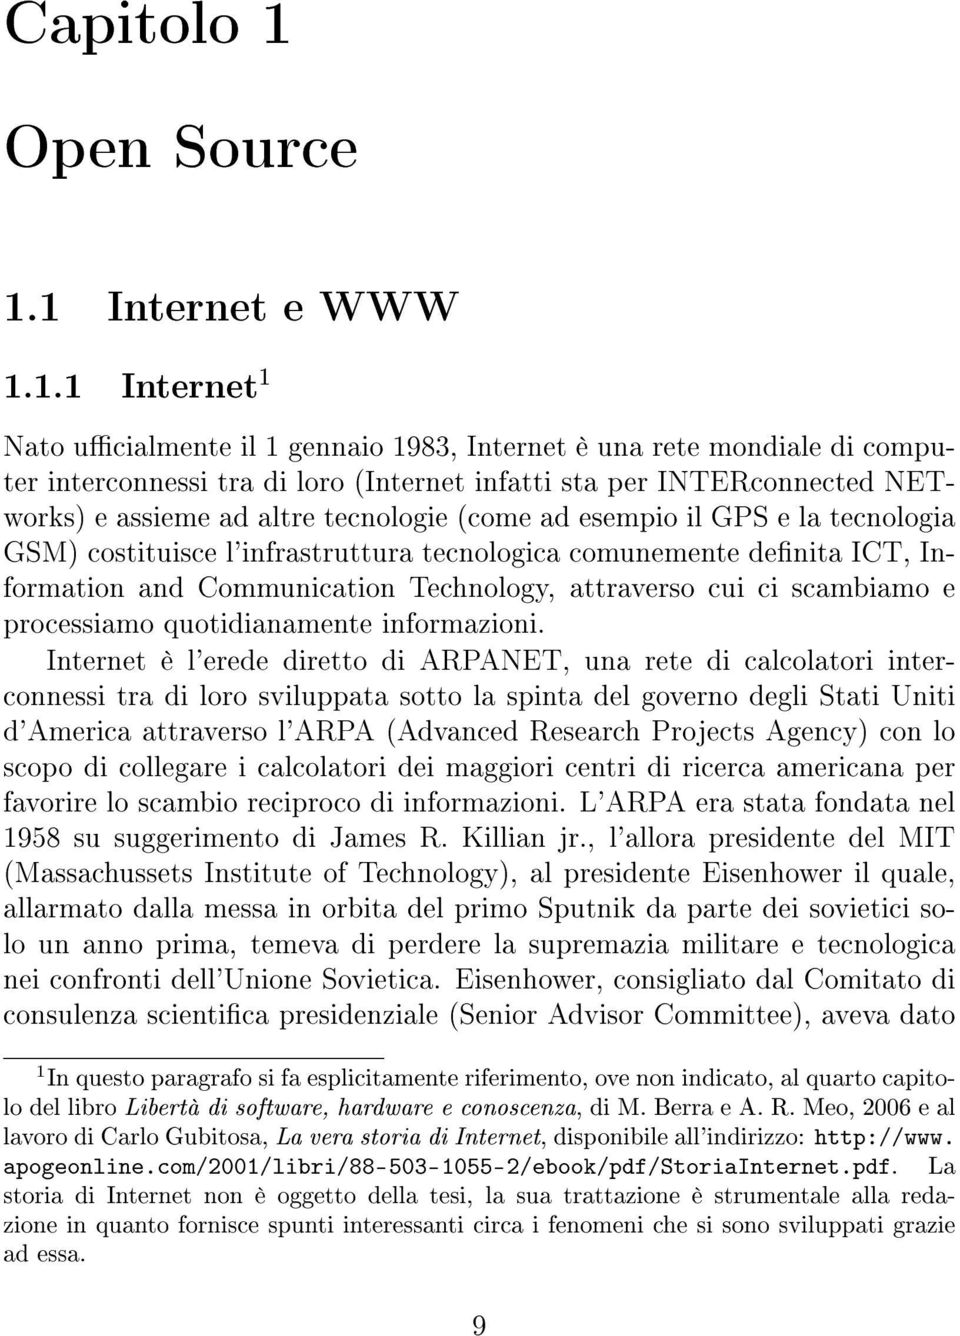 1 Internet e WWW 1.1.1 Internet 1 Nato ucialmente il 1 gennaio 1983, Internet è una rete mondiale di computer interconnessi tra di loro (Internet infatti sta per INTERconnected NETworks) e assieme ad